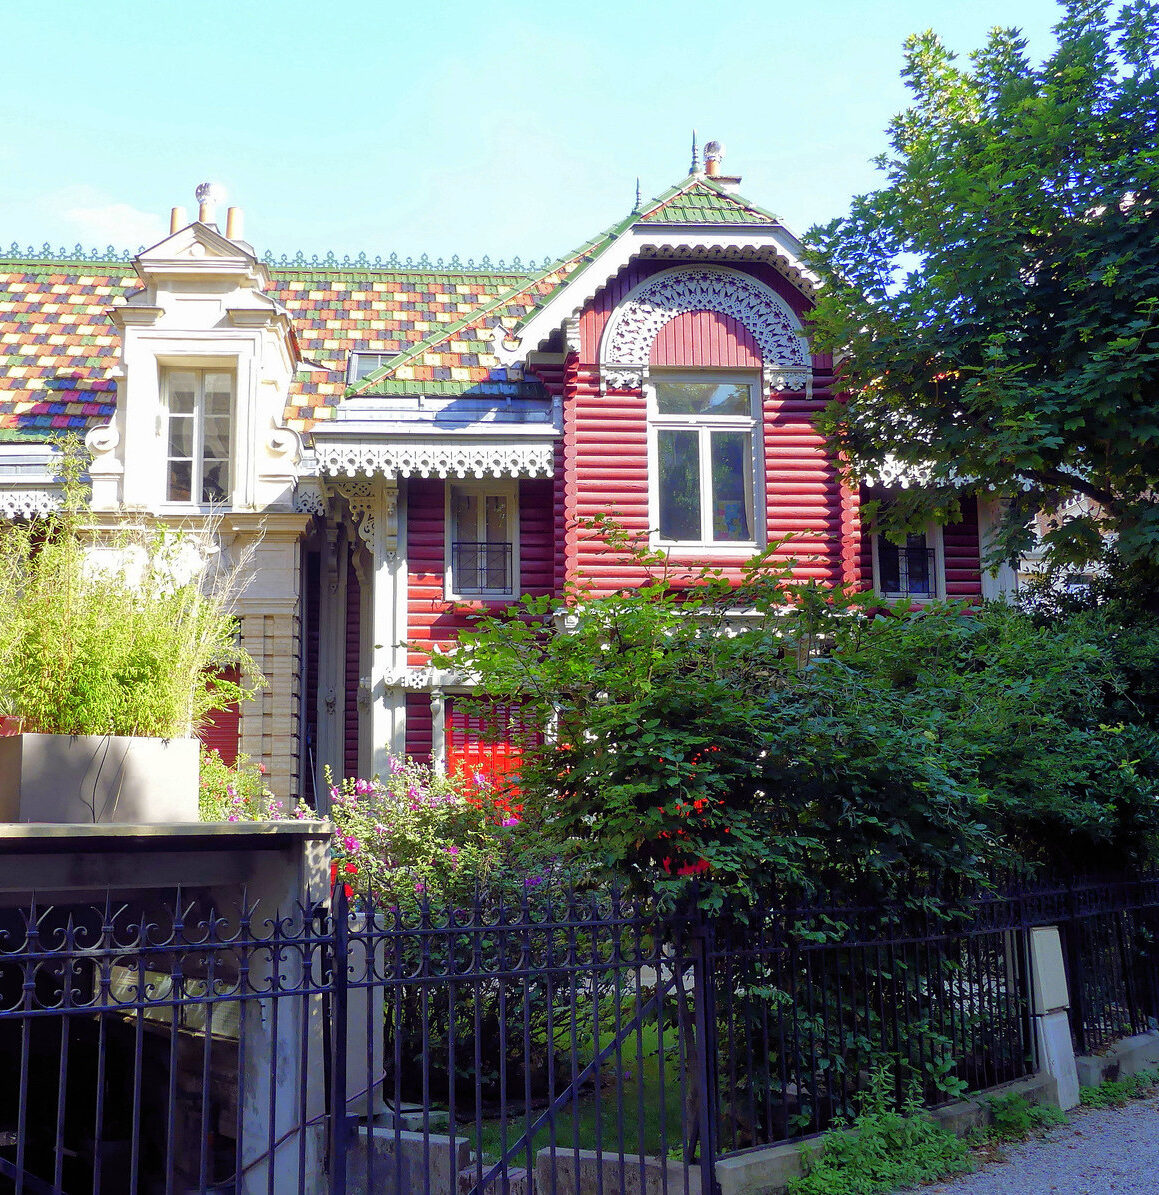 maison russe facade mur bois rouge blanc moulure deco exterieure